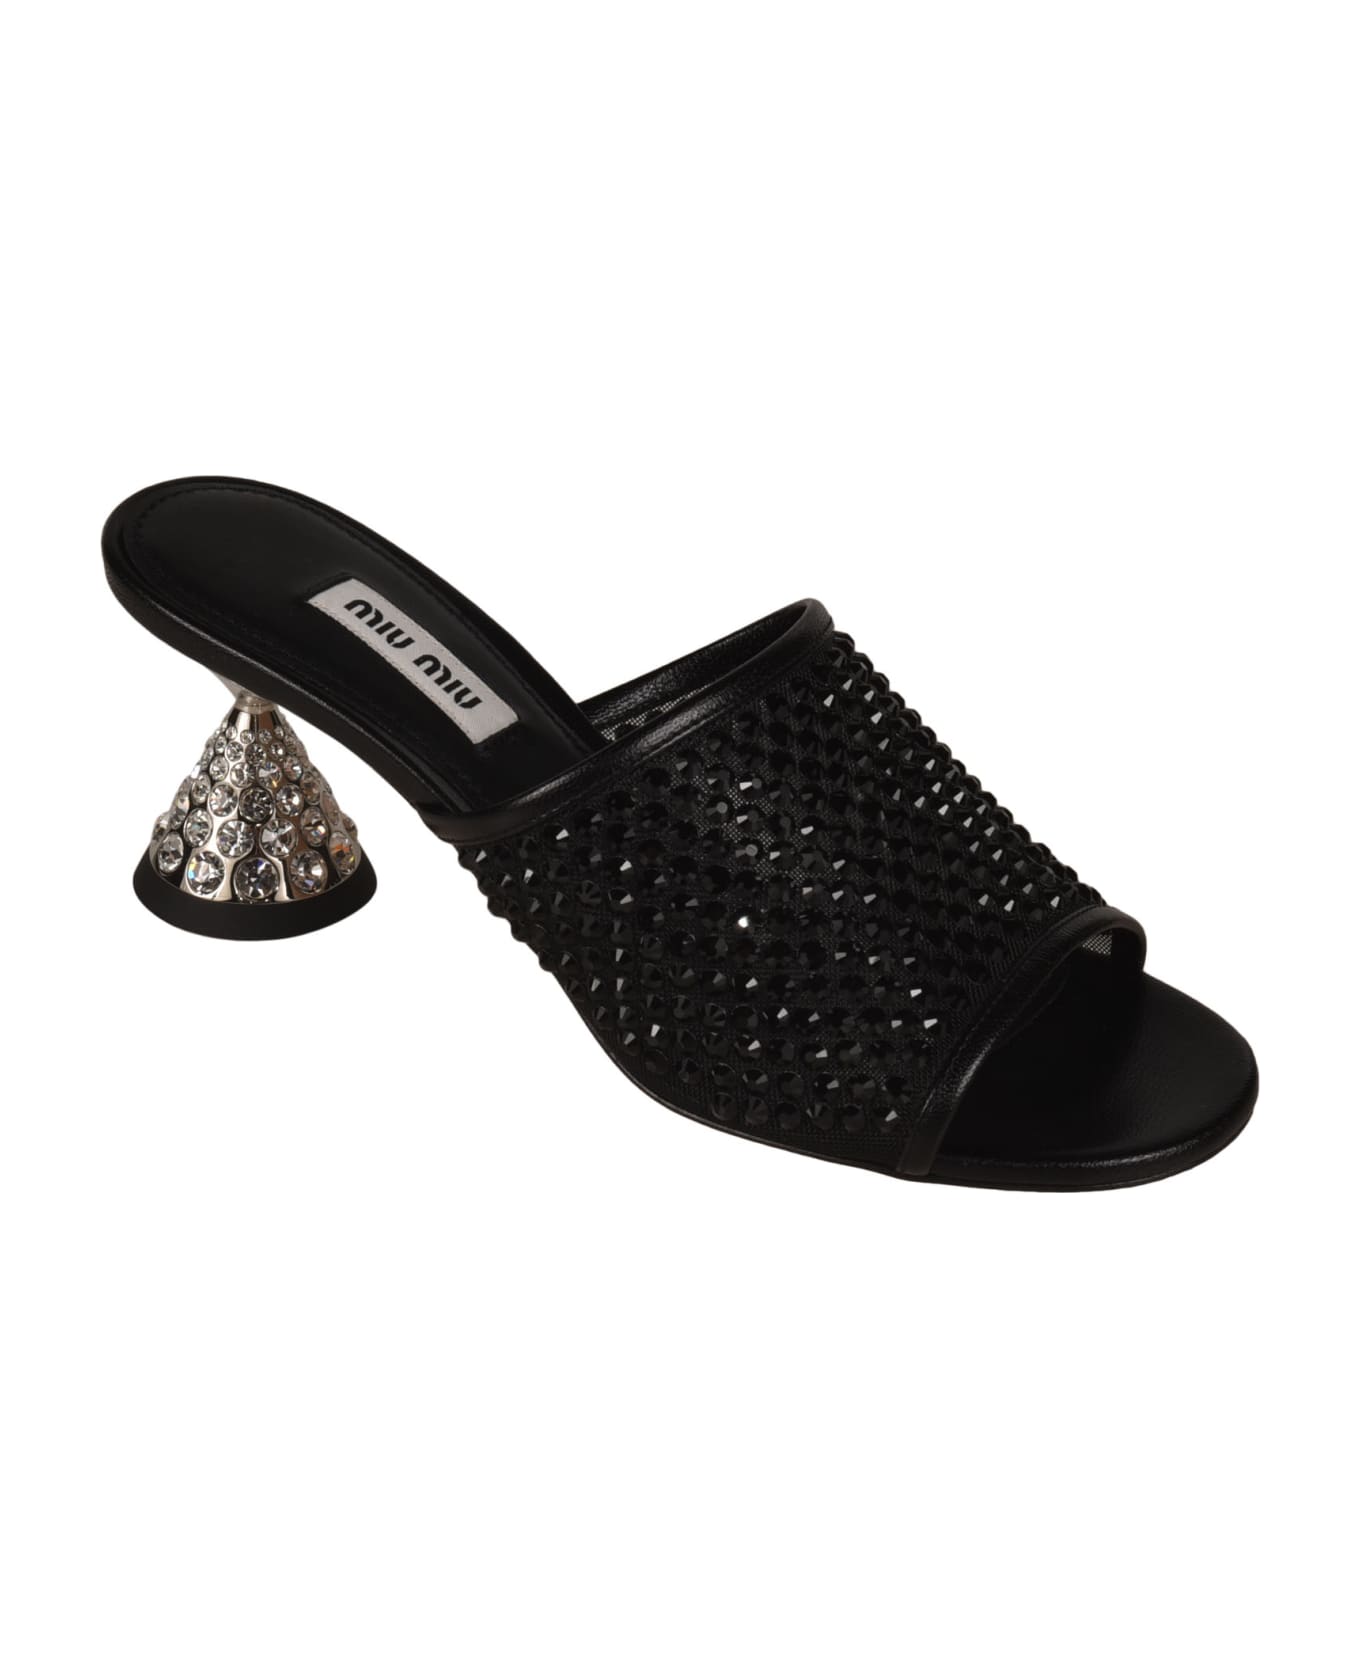 Miu Miu Embellished Heel Sandals - Black サンダル